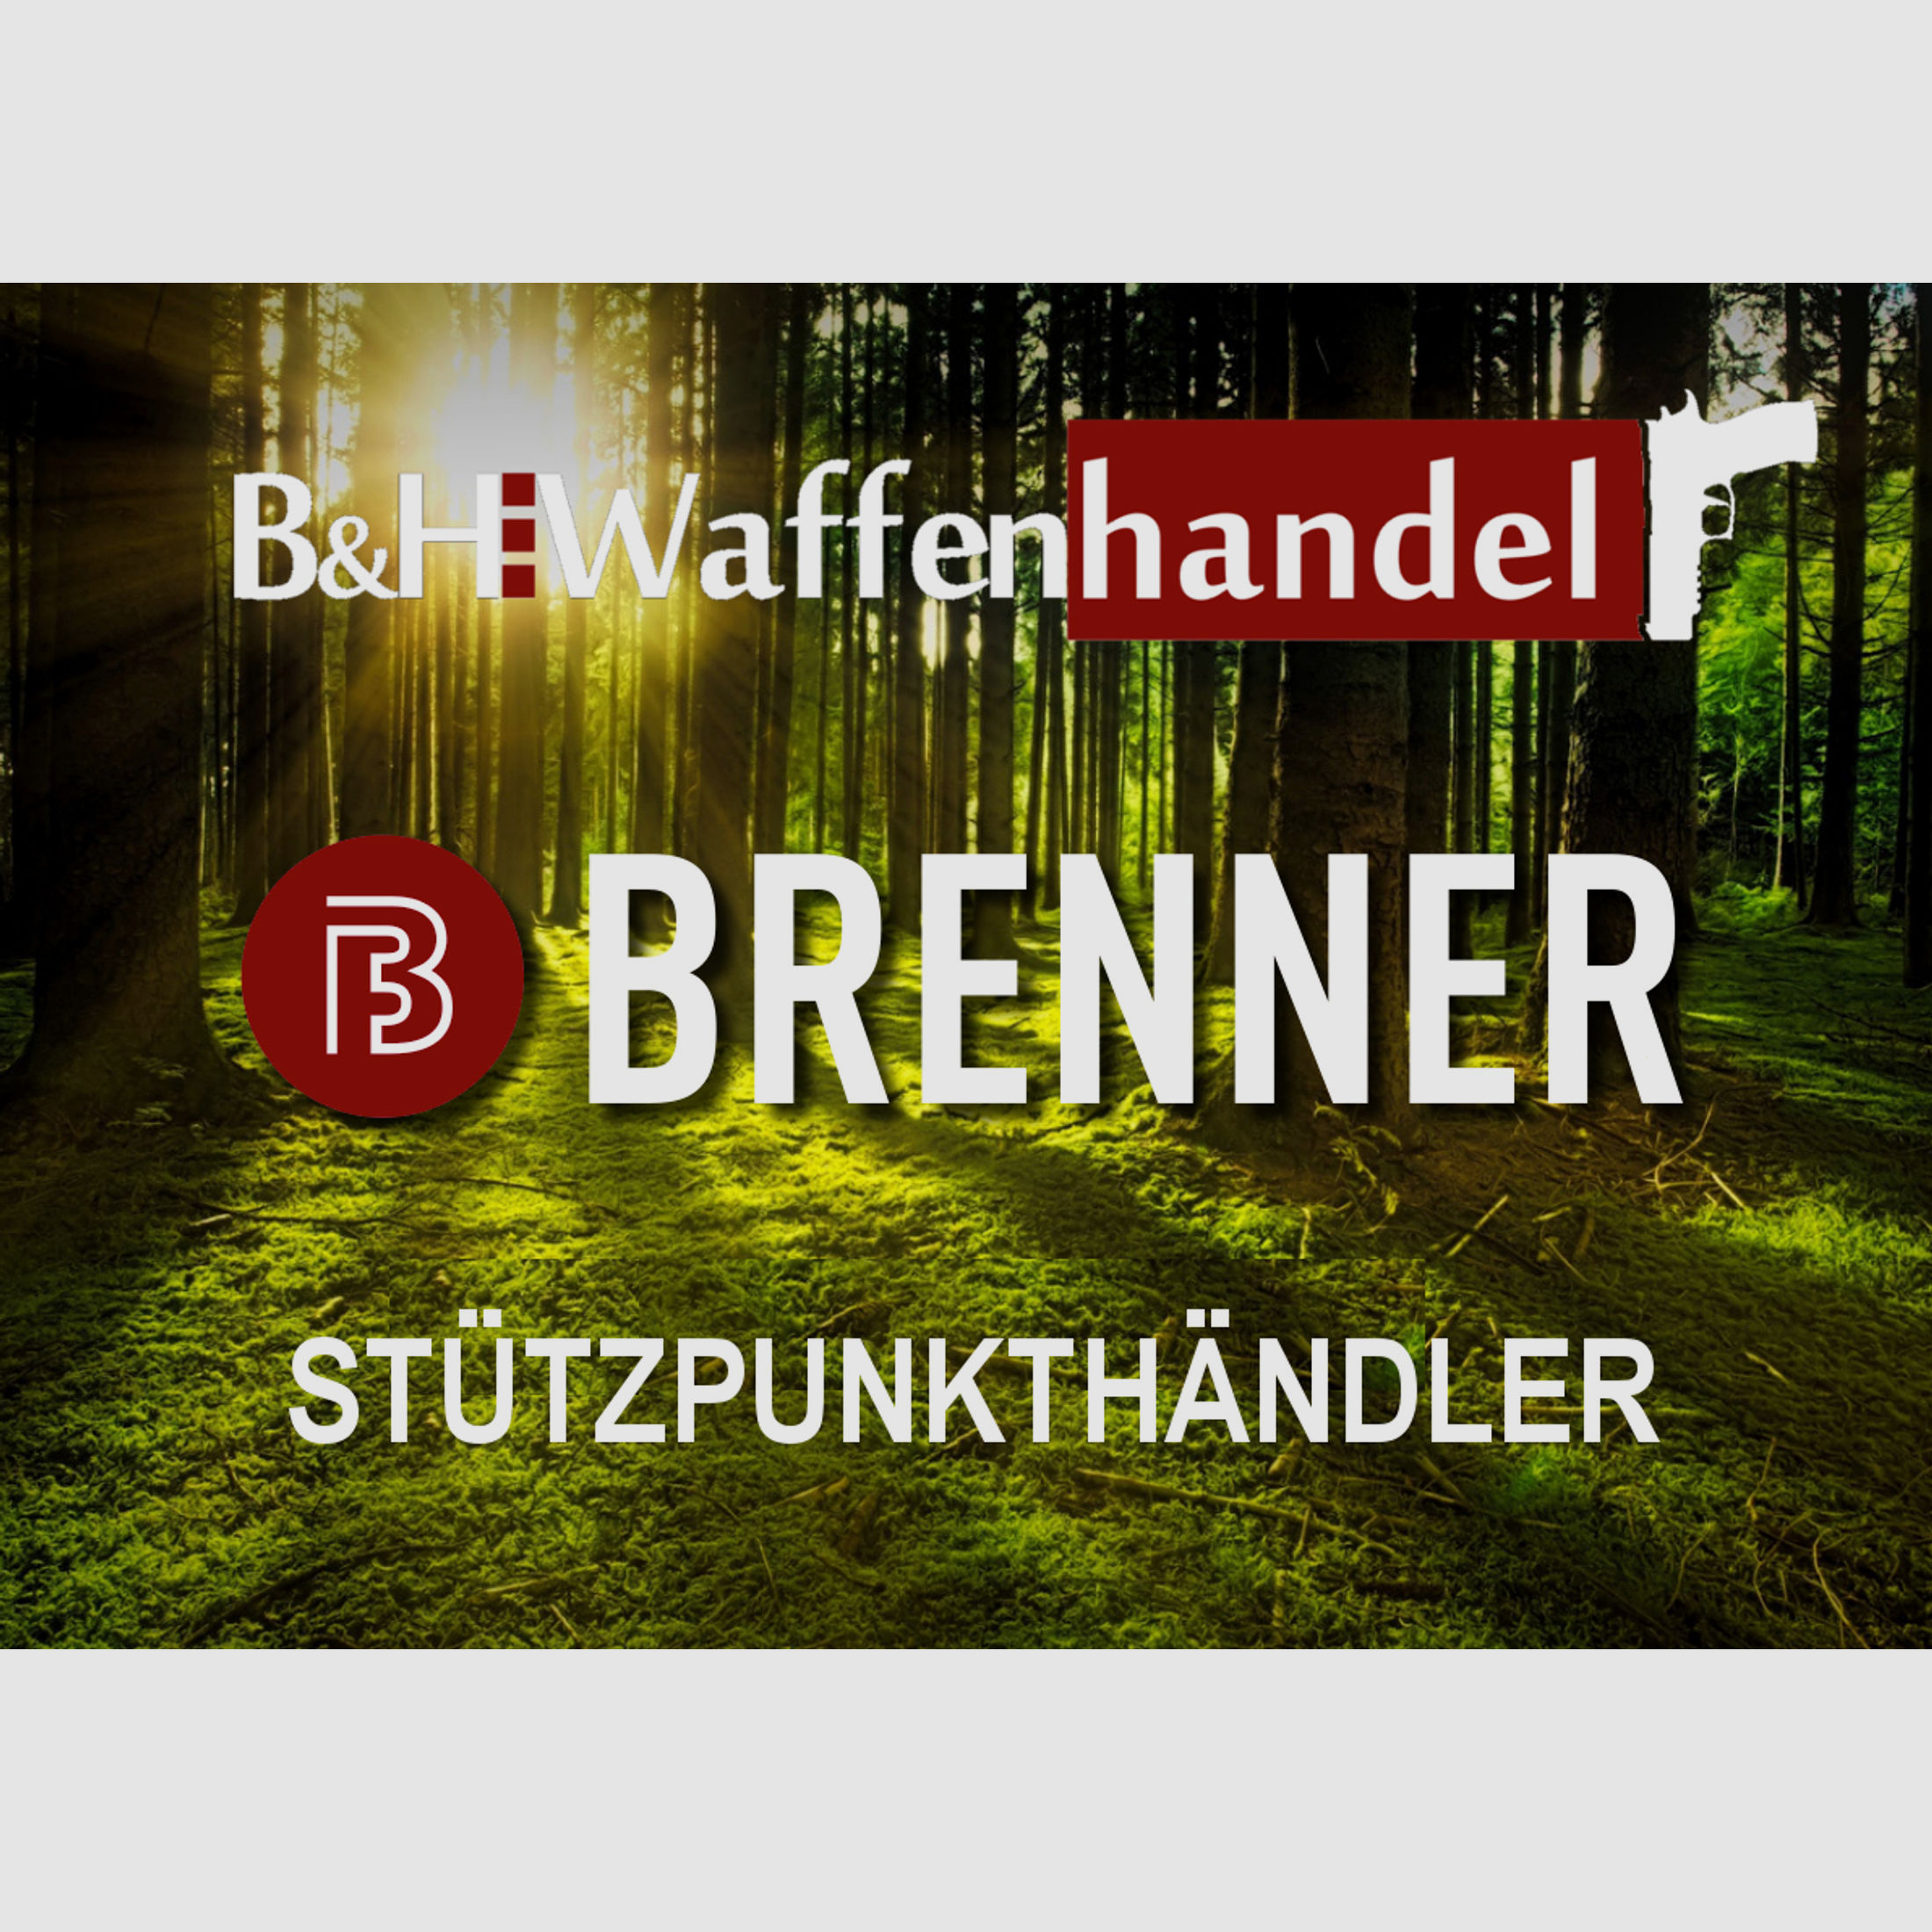 Brenner Komplettpaket: BR20 Prohunter Lochschaft mit Hawke Endurance 3-12x56 (Art.Nr.: BR20PHP4) Finanzierung möglich